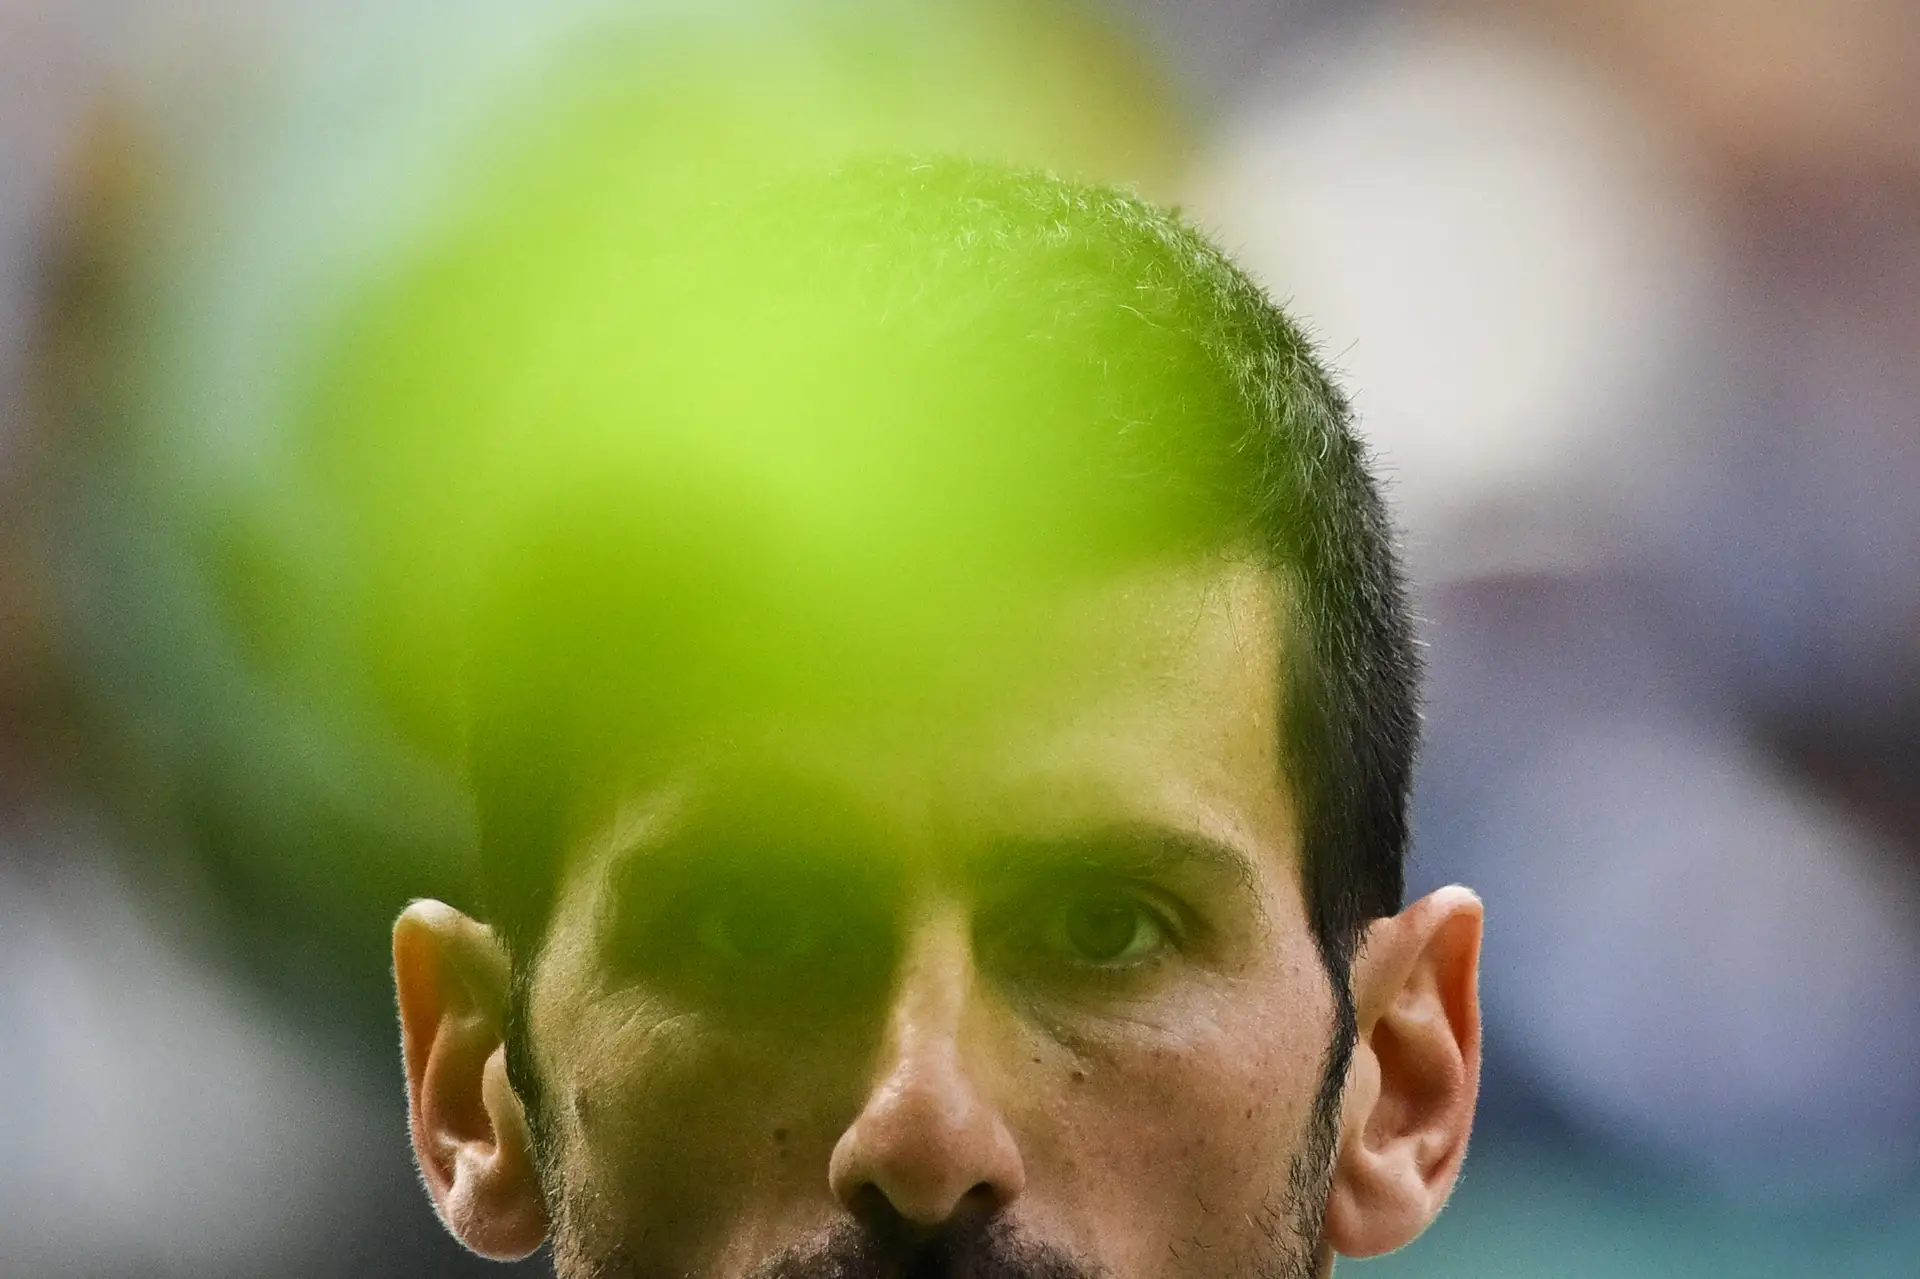 Em Wimbledon, o (ainda) monstrinho Alcaraz destronou o monstro Djokovic